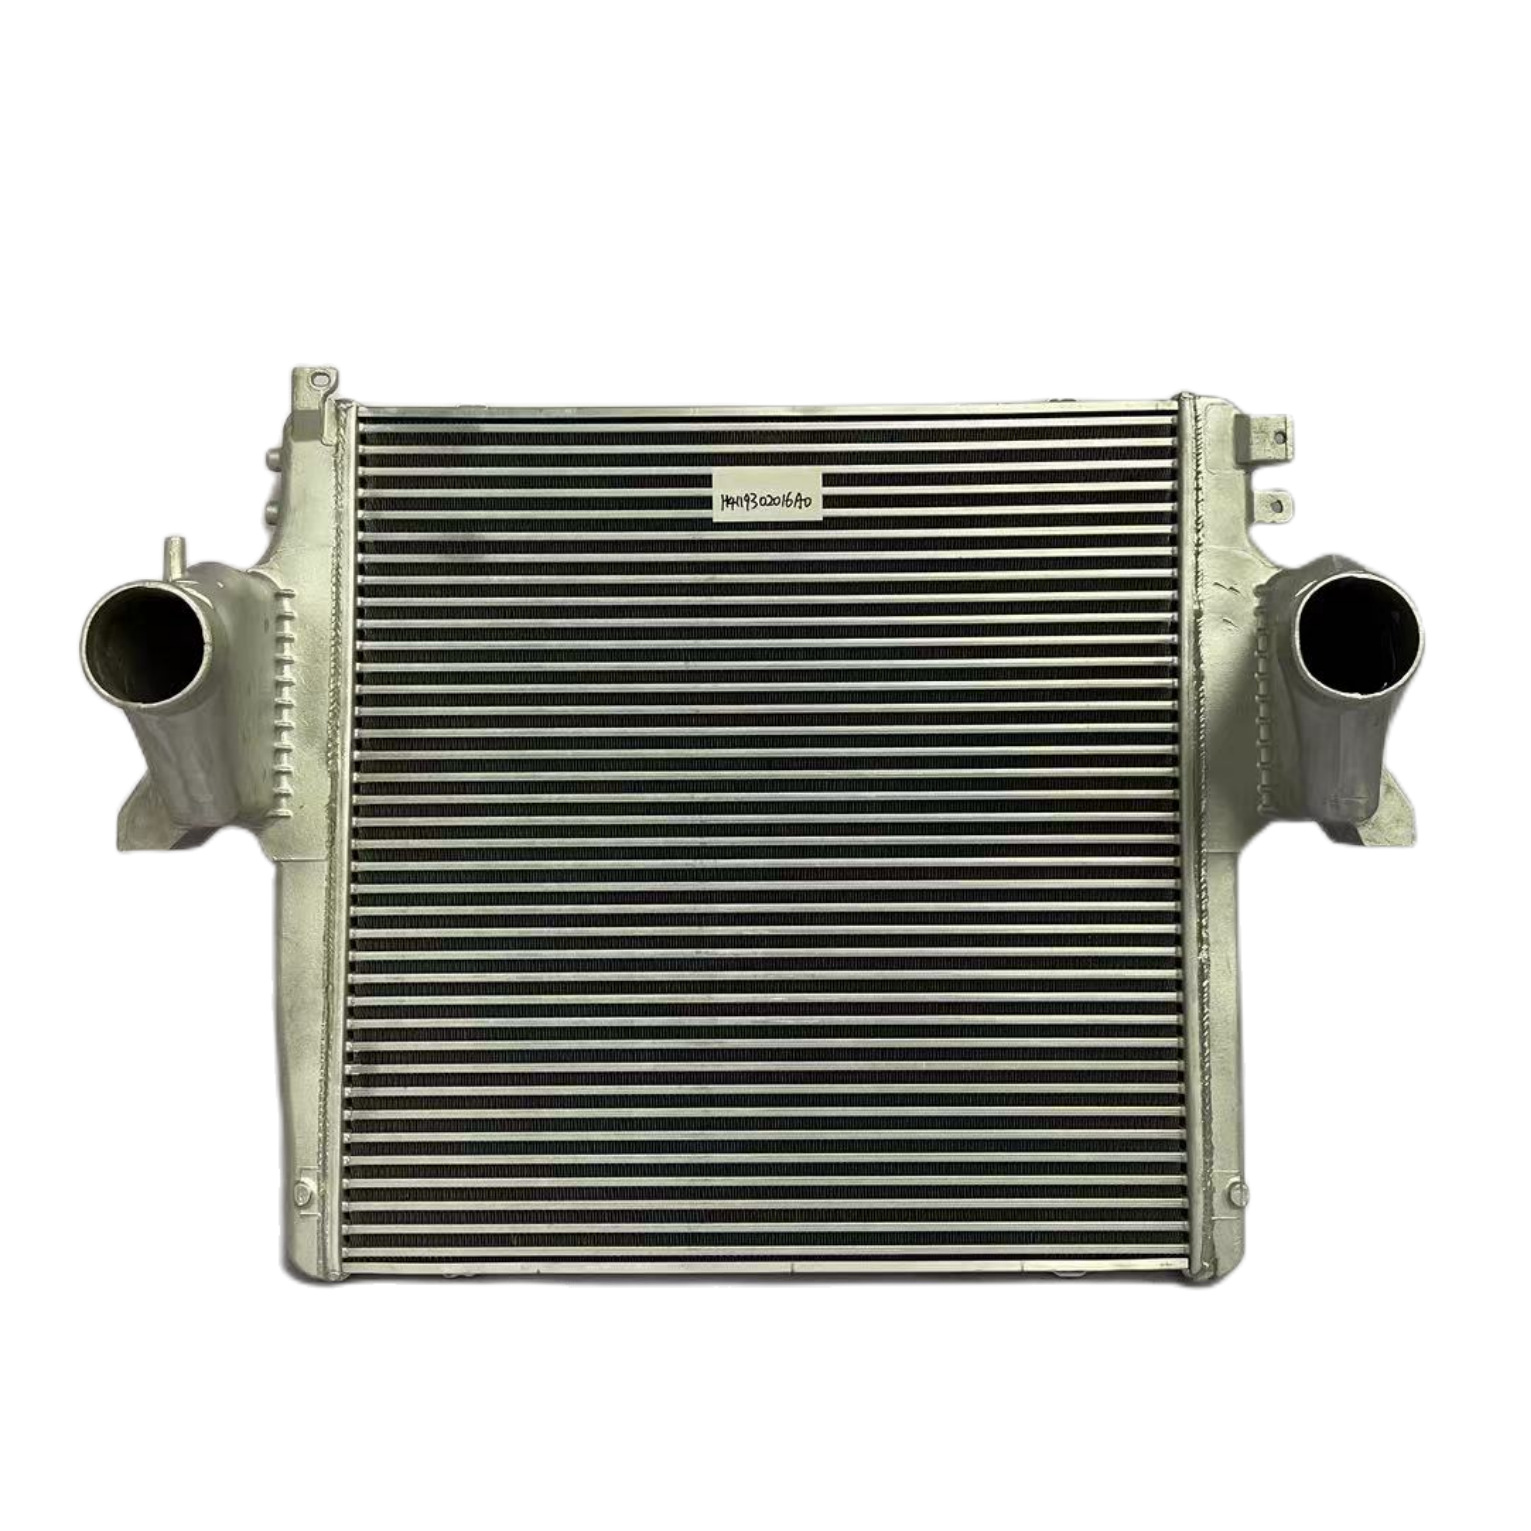 H4119302016A0 汽车散热器  性能稳定 厂家货源 欧曼散热器